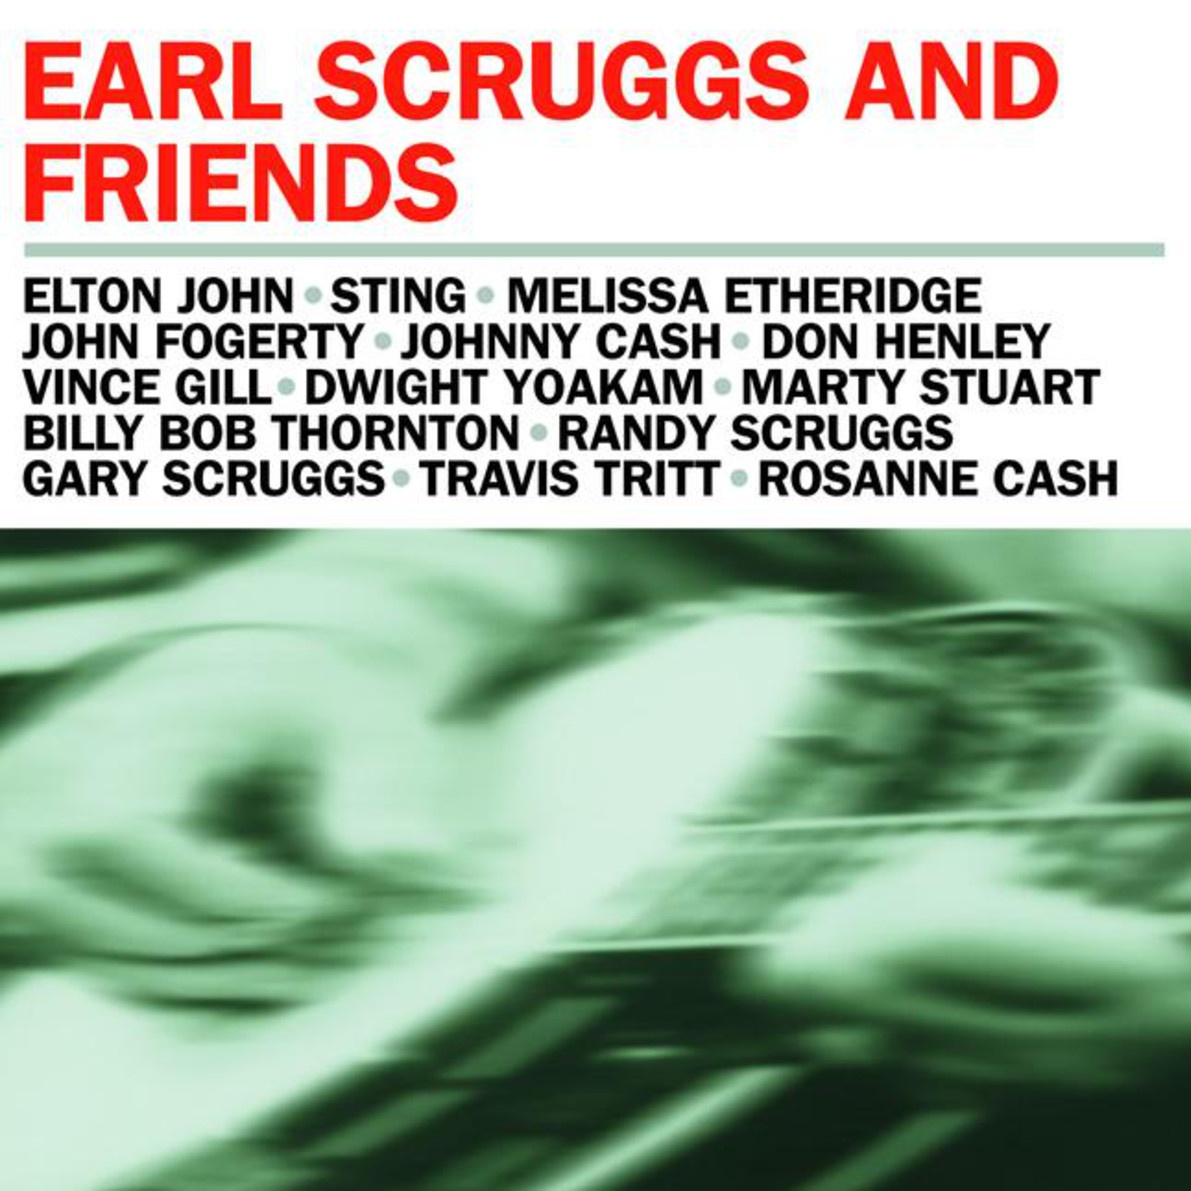 Foggy Mountain Breakdown - 2001 Earl Scruggs & Friends Version